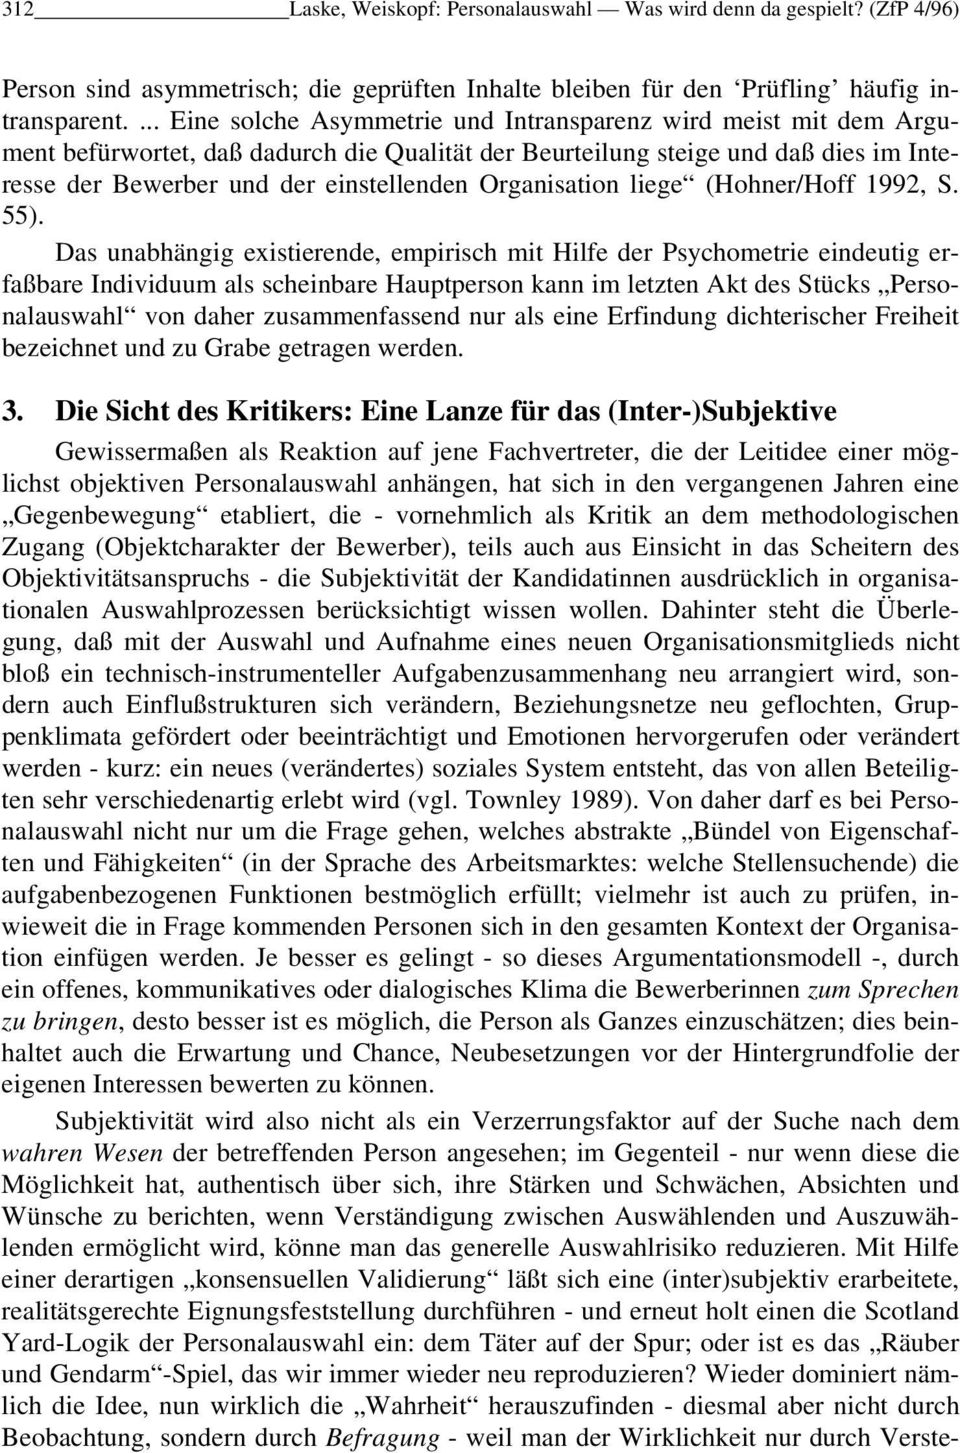 Organisation liege (Hohner/Hoff 1992, S. 55).